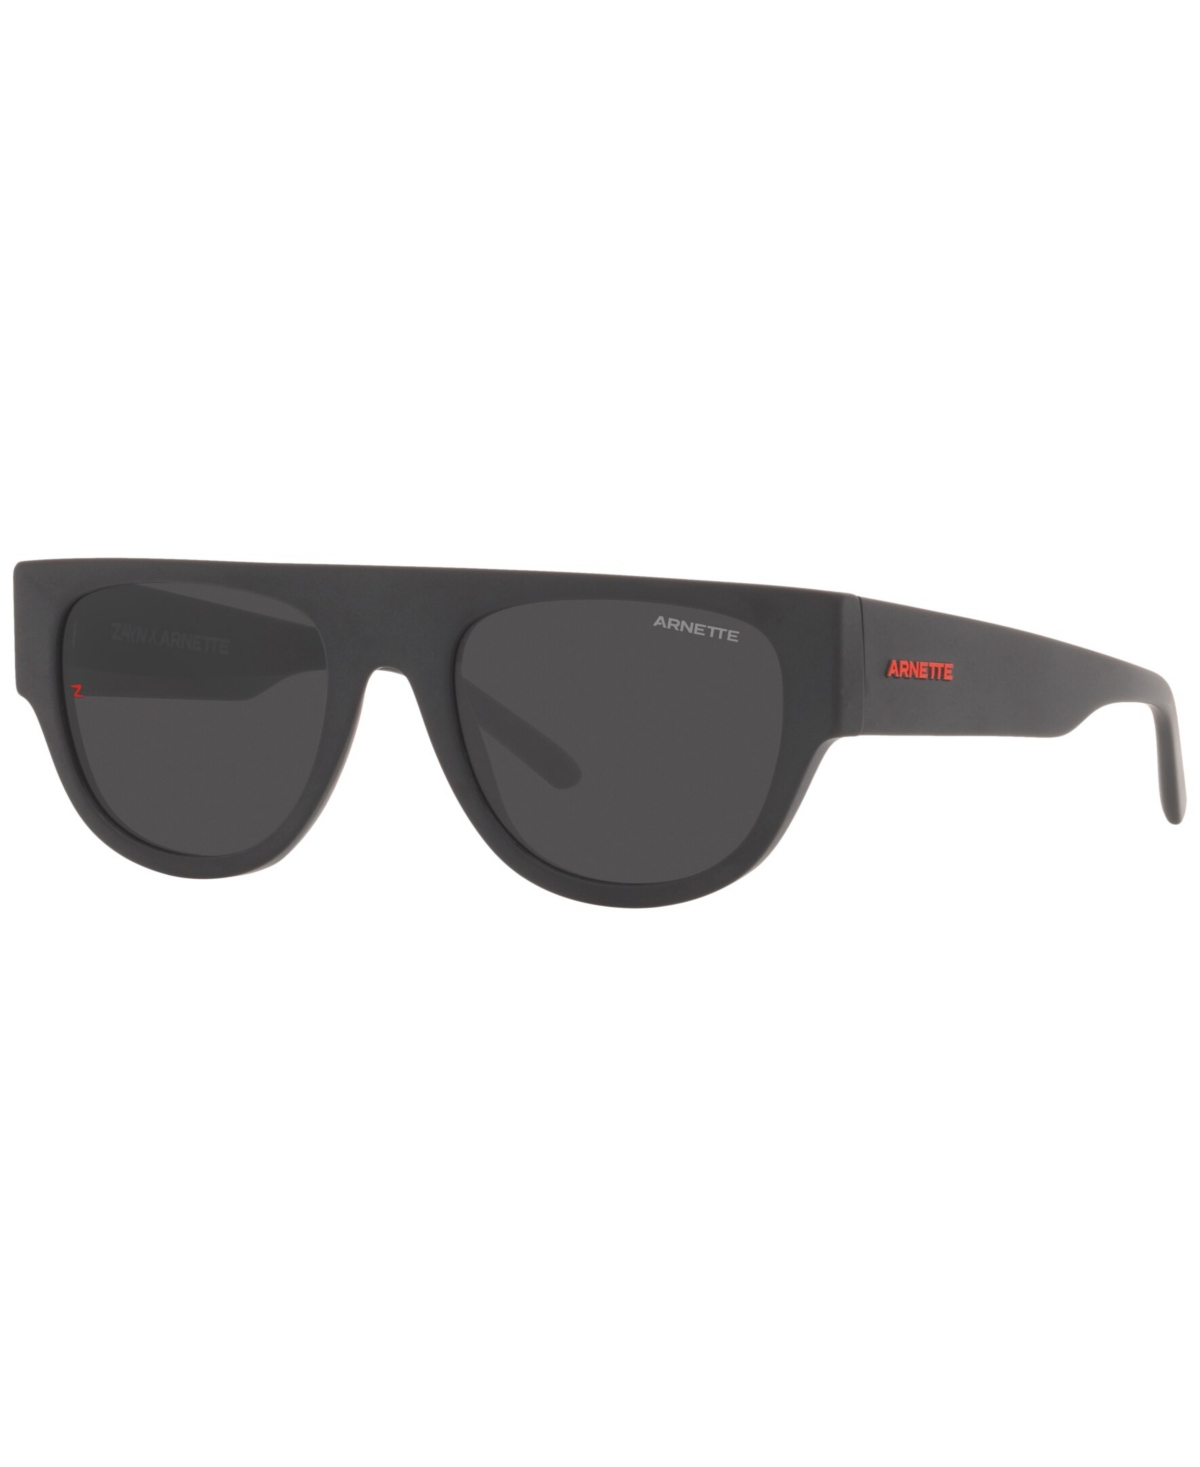 Arnette Unisex Sunglasses, AN4293 Gto 53